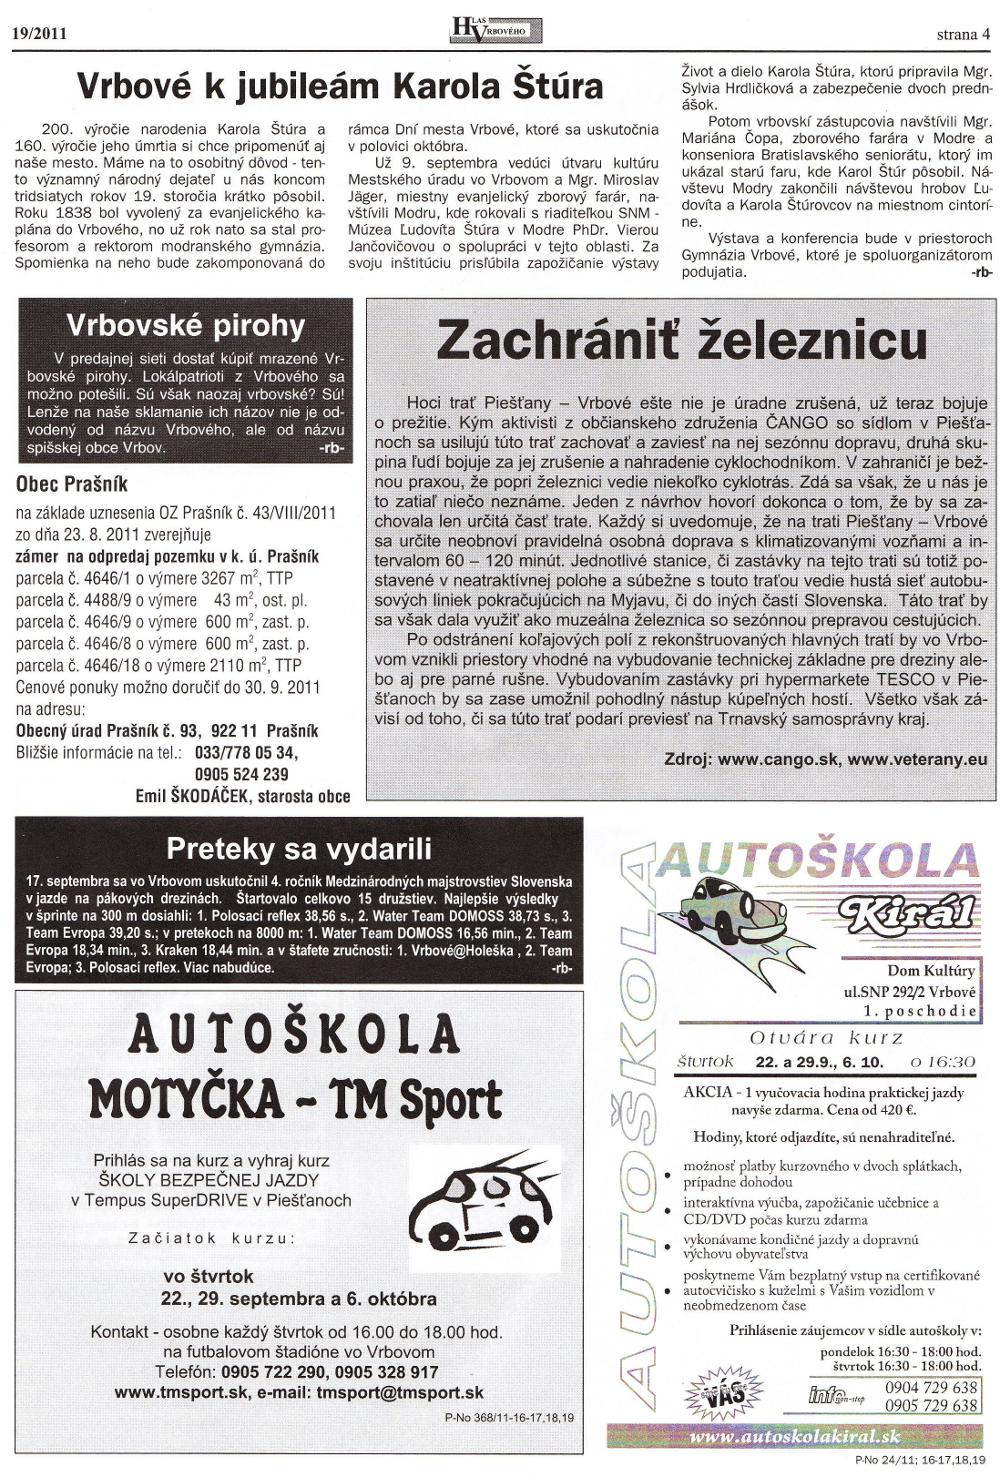 Hlas Vrbového 19/2011, strana 4